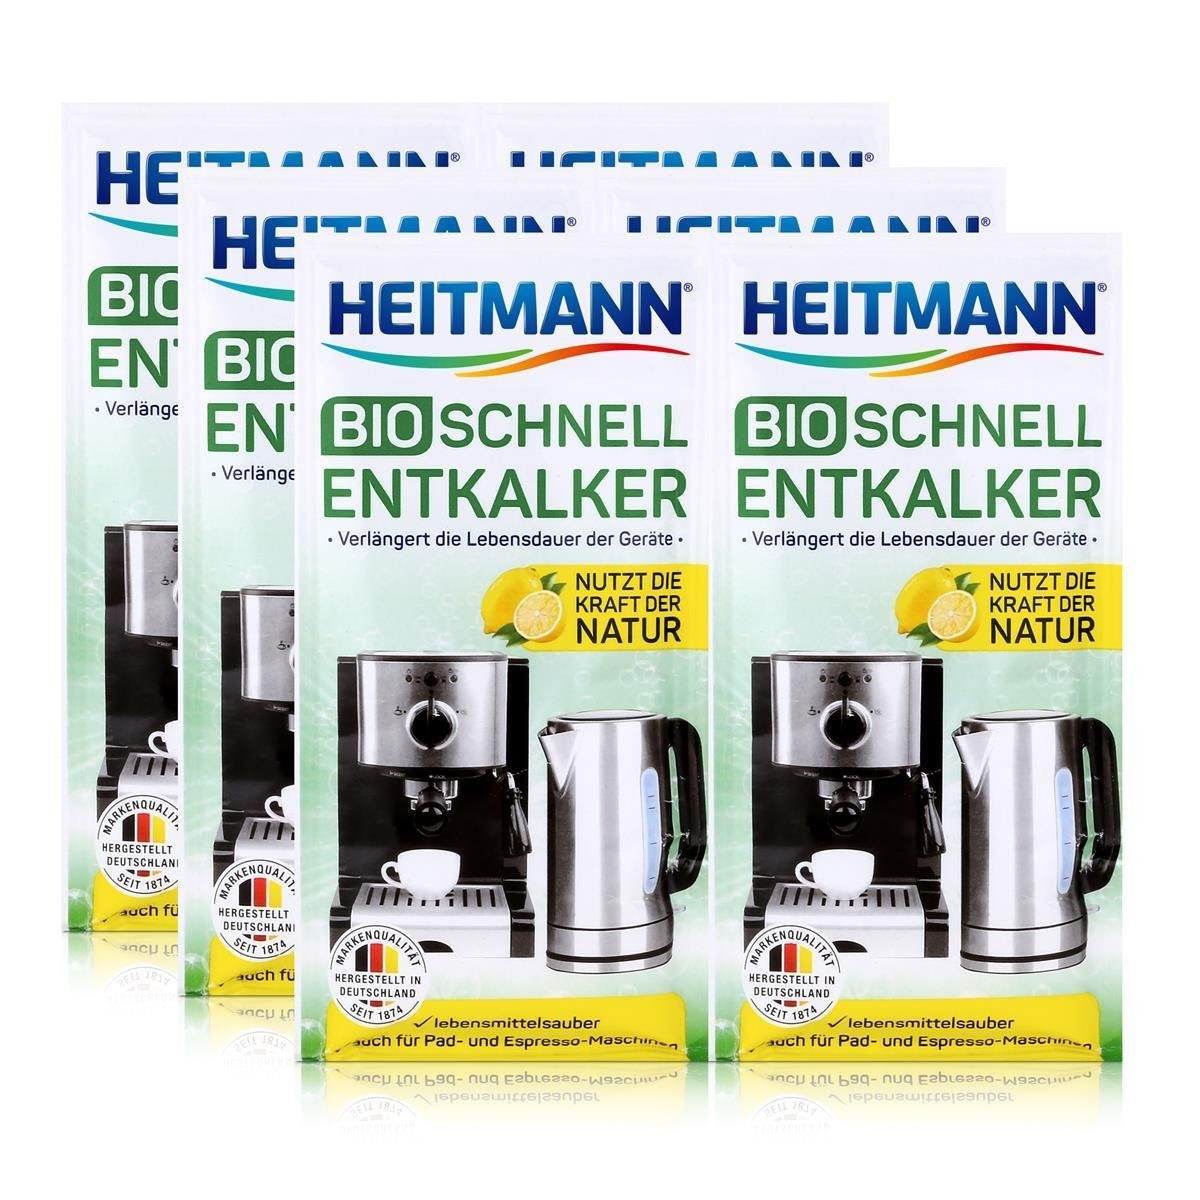 HEITMANN Heitmann Bio Schnell-Entkalker 2x25g - Entkalker Universalentkalker Natürlicher